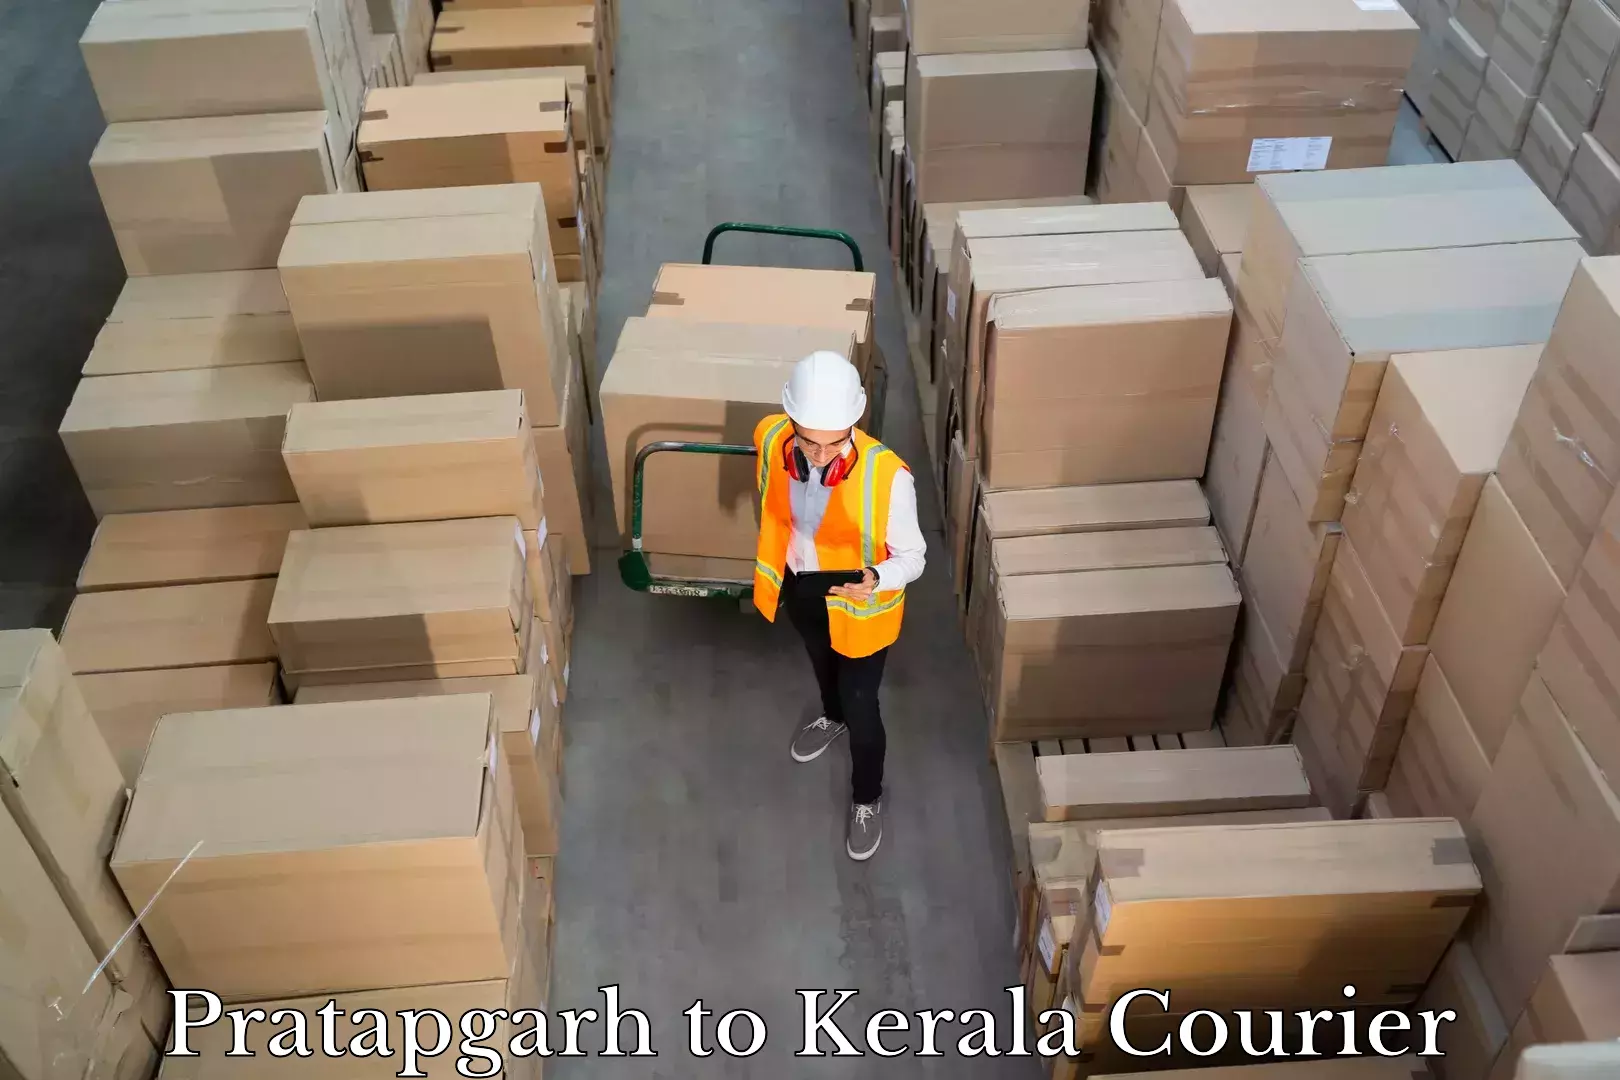 Door-to-door baggage service Pratapgarh to Kanhangad